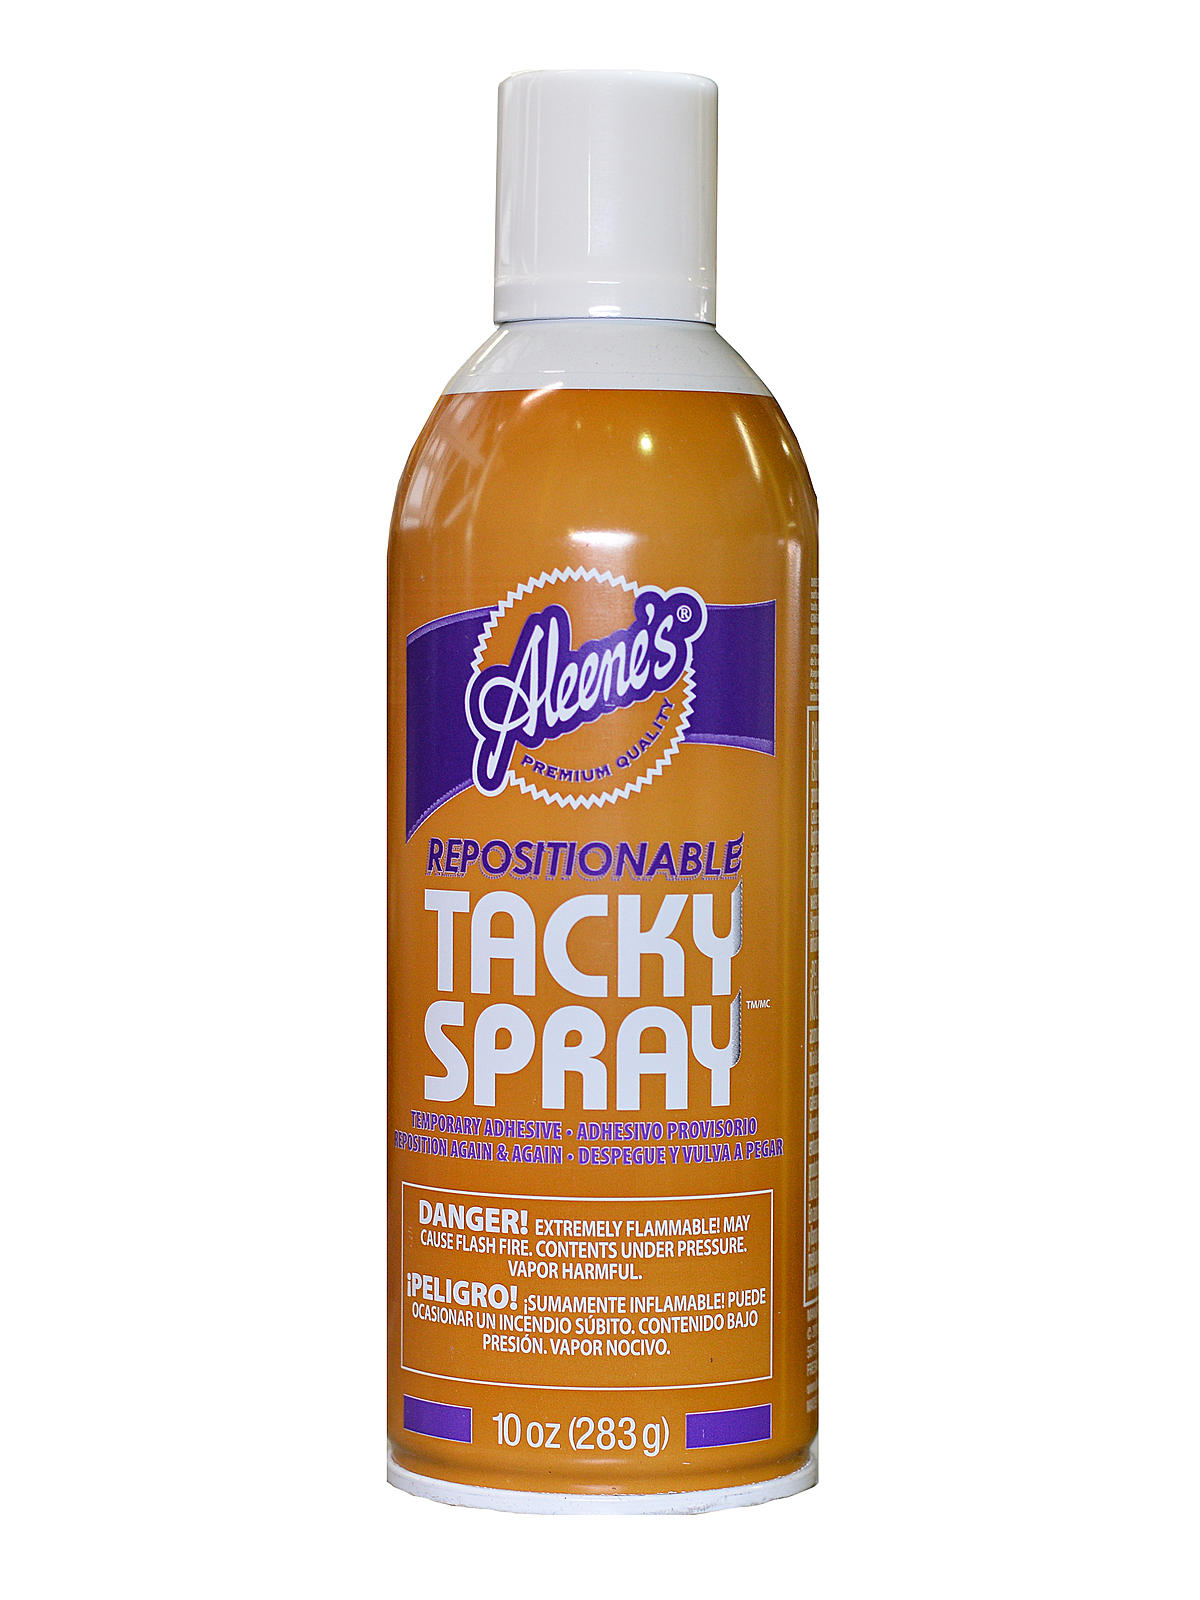 Repositionable Tacky Spray 10 Oz. Can